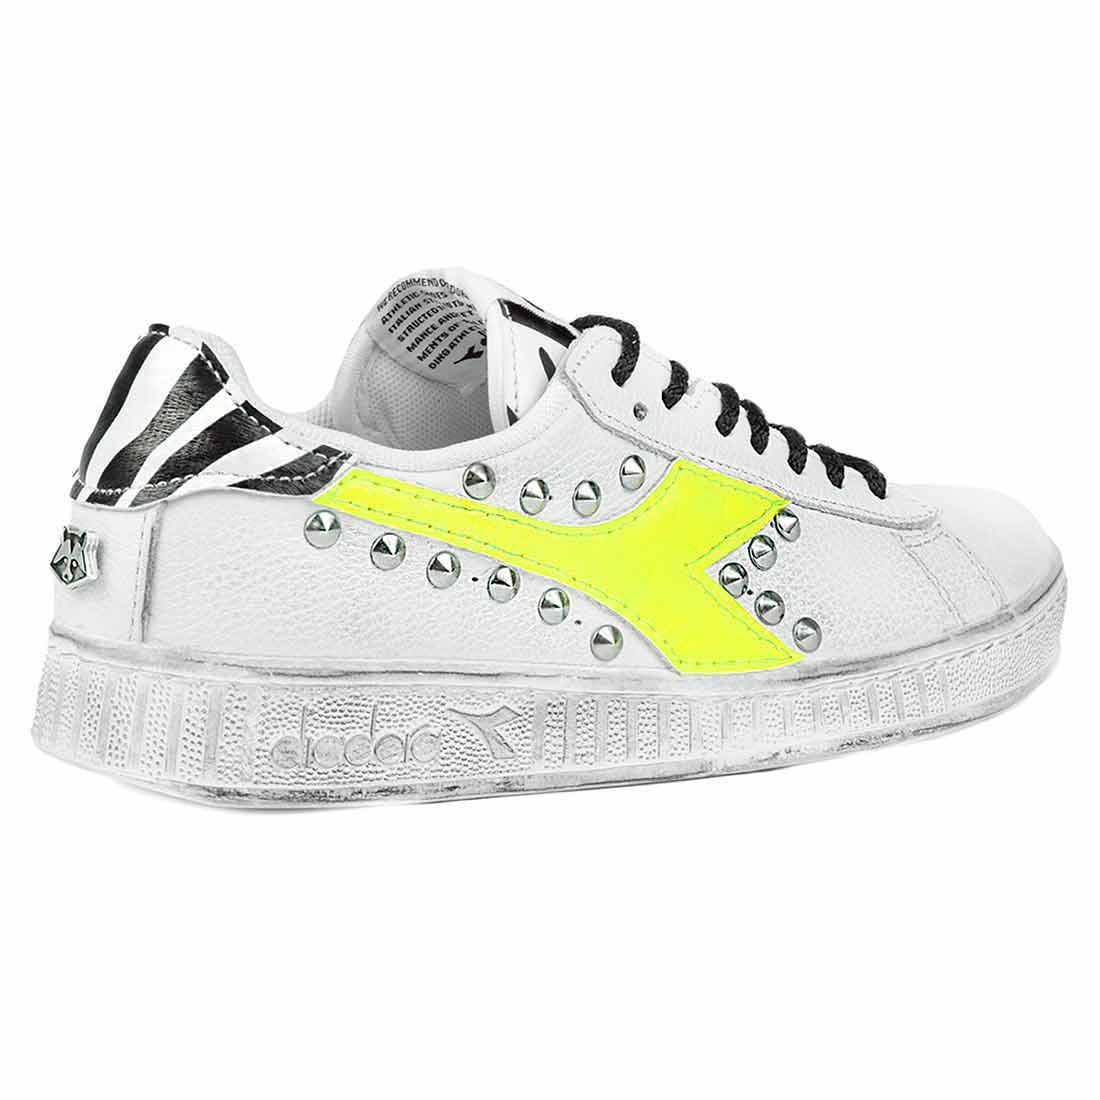 Sneakers Diadora zebrate gialle fluo personalizzate con borchie